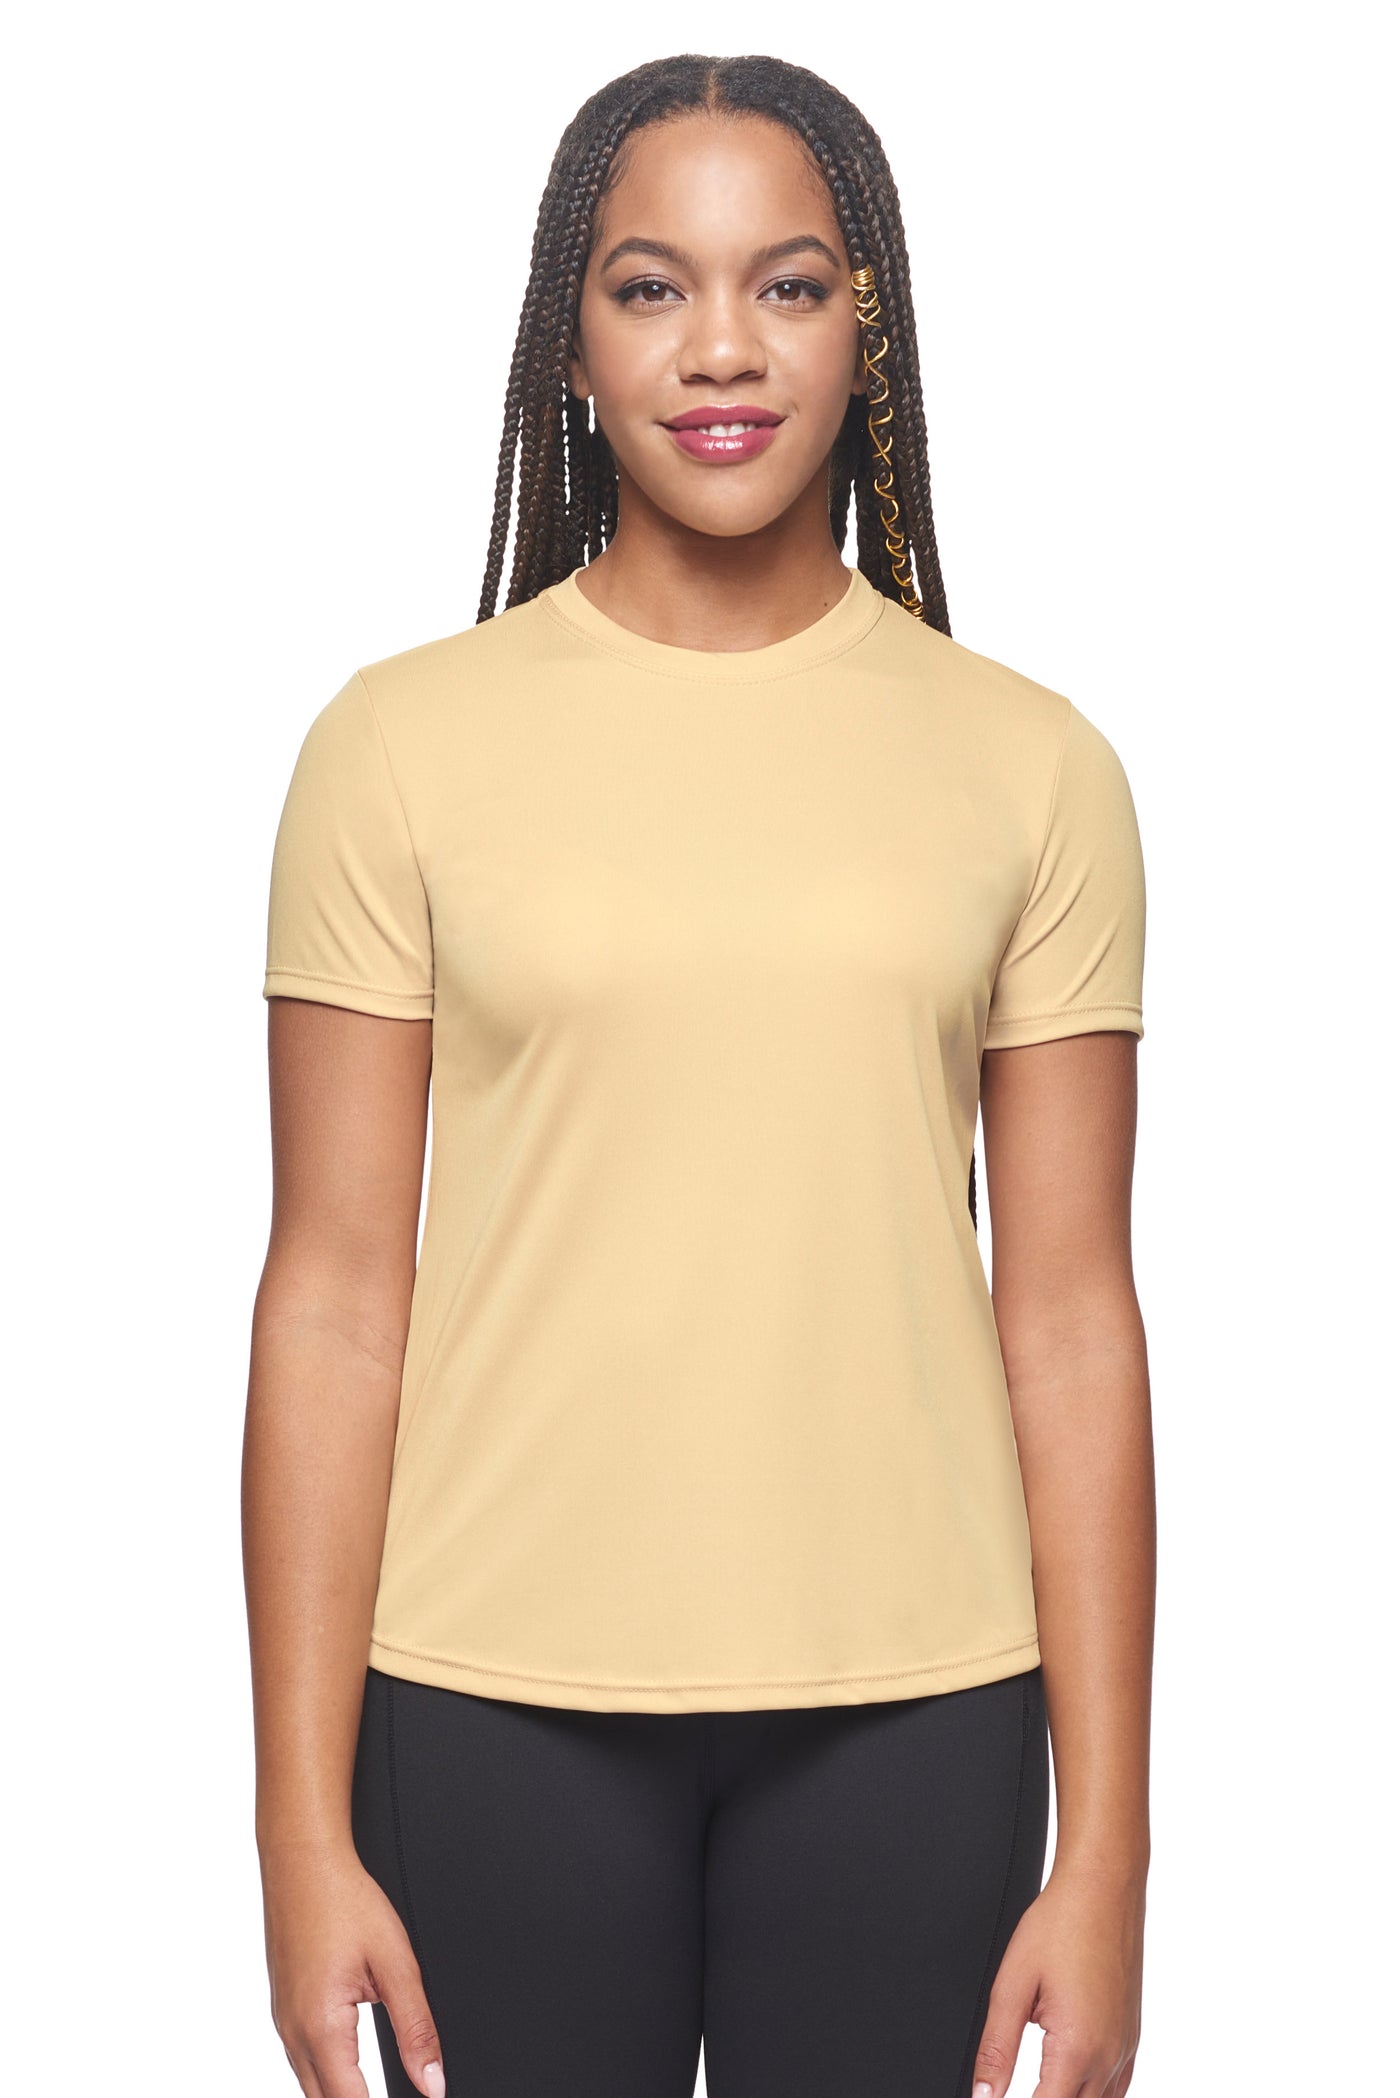 Expert Brand Retail Women's Pk MaX™ Crewneck Expert Tec Tee T-shirt vegas gold#color_vegas-gold